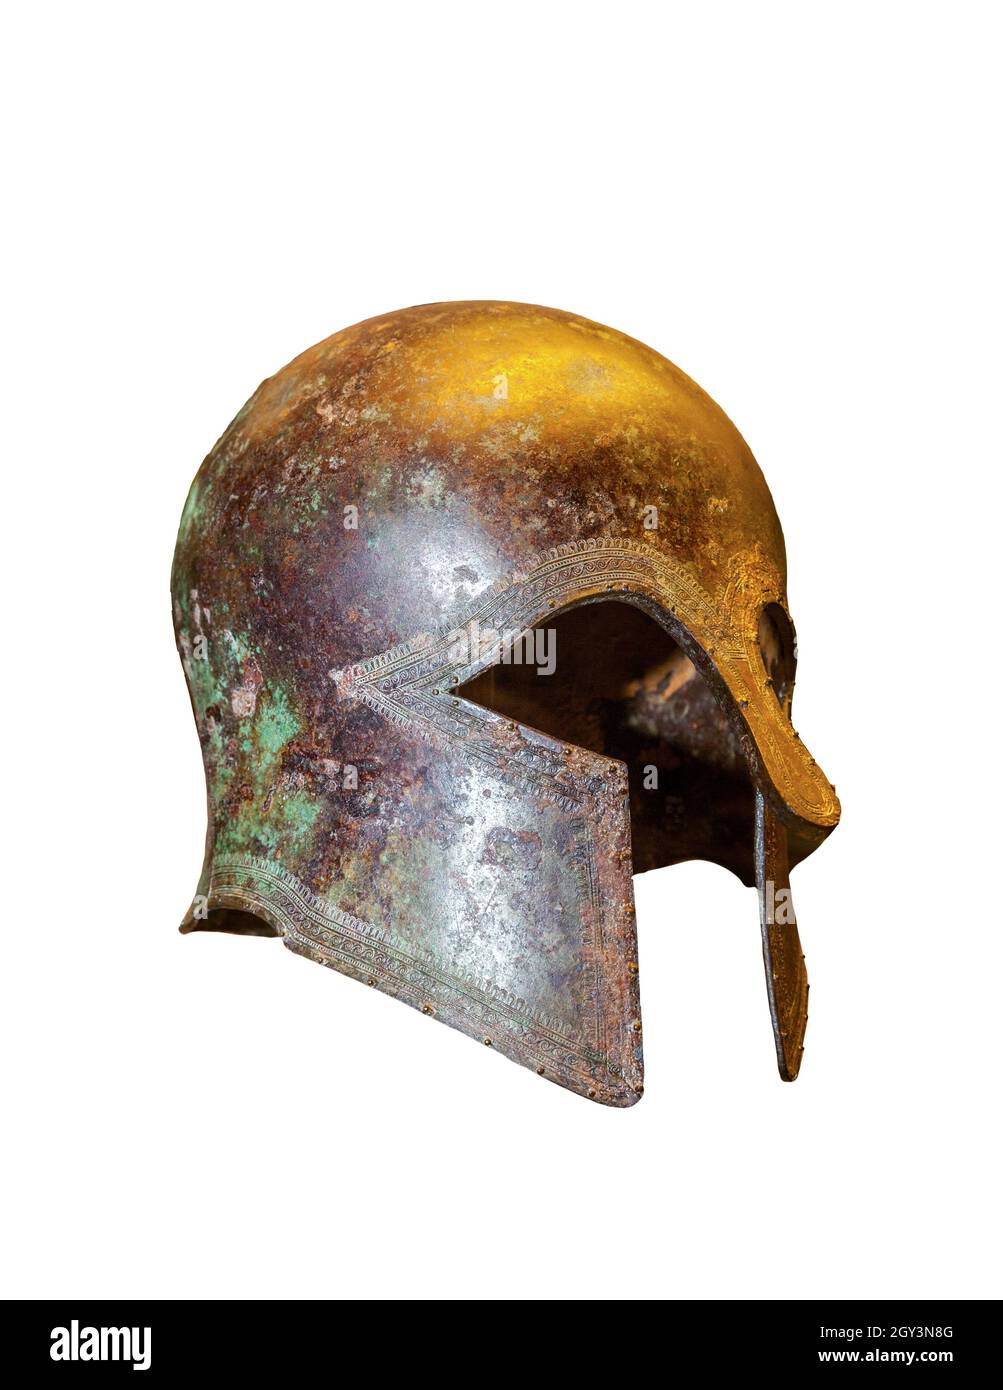 Griechischer Korinthischer Helm. Der korinthische Helm stammt aus dem antiken Griechenland und hat seinen Namen vom Stadtstaat Korinth. Es war ein Helm aus Stockfoto